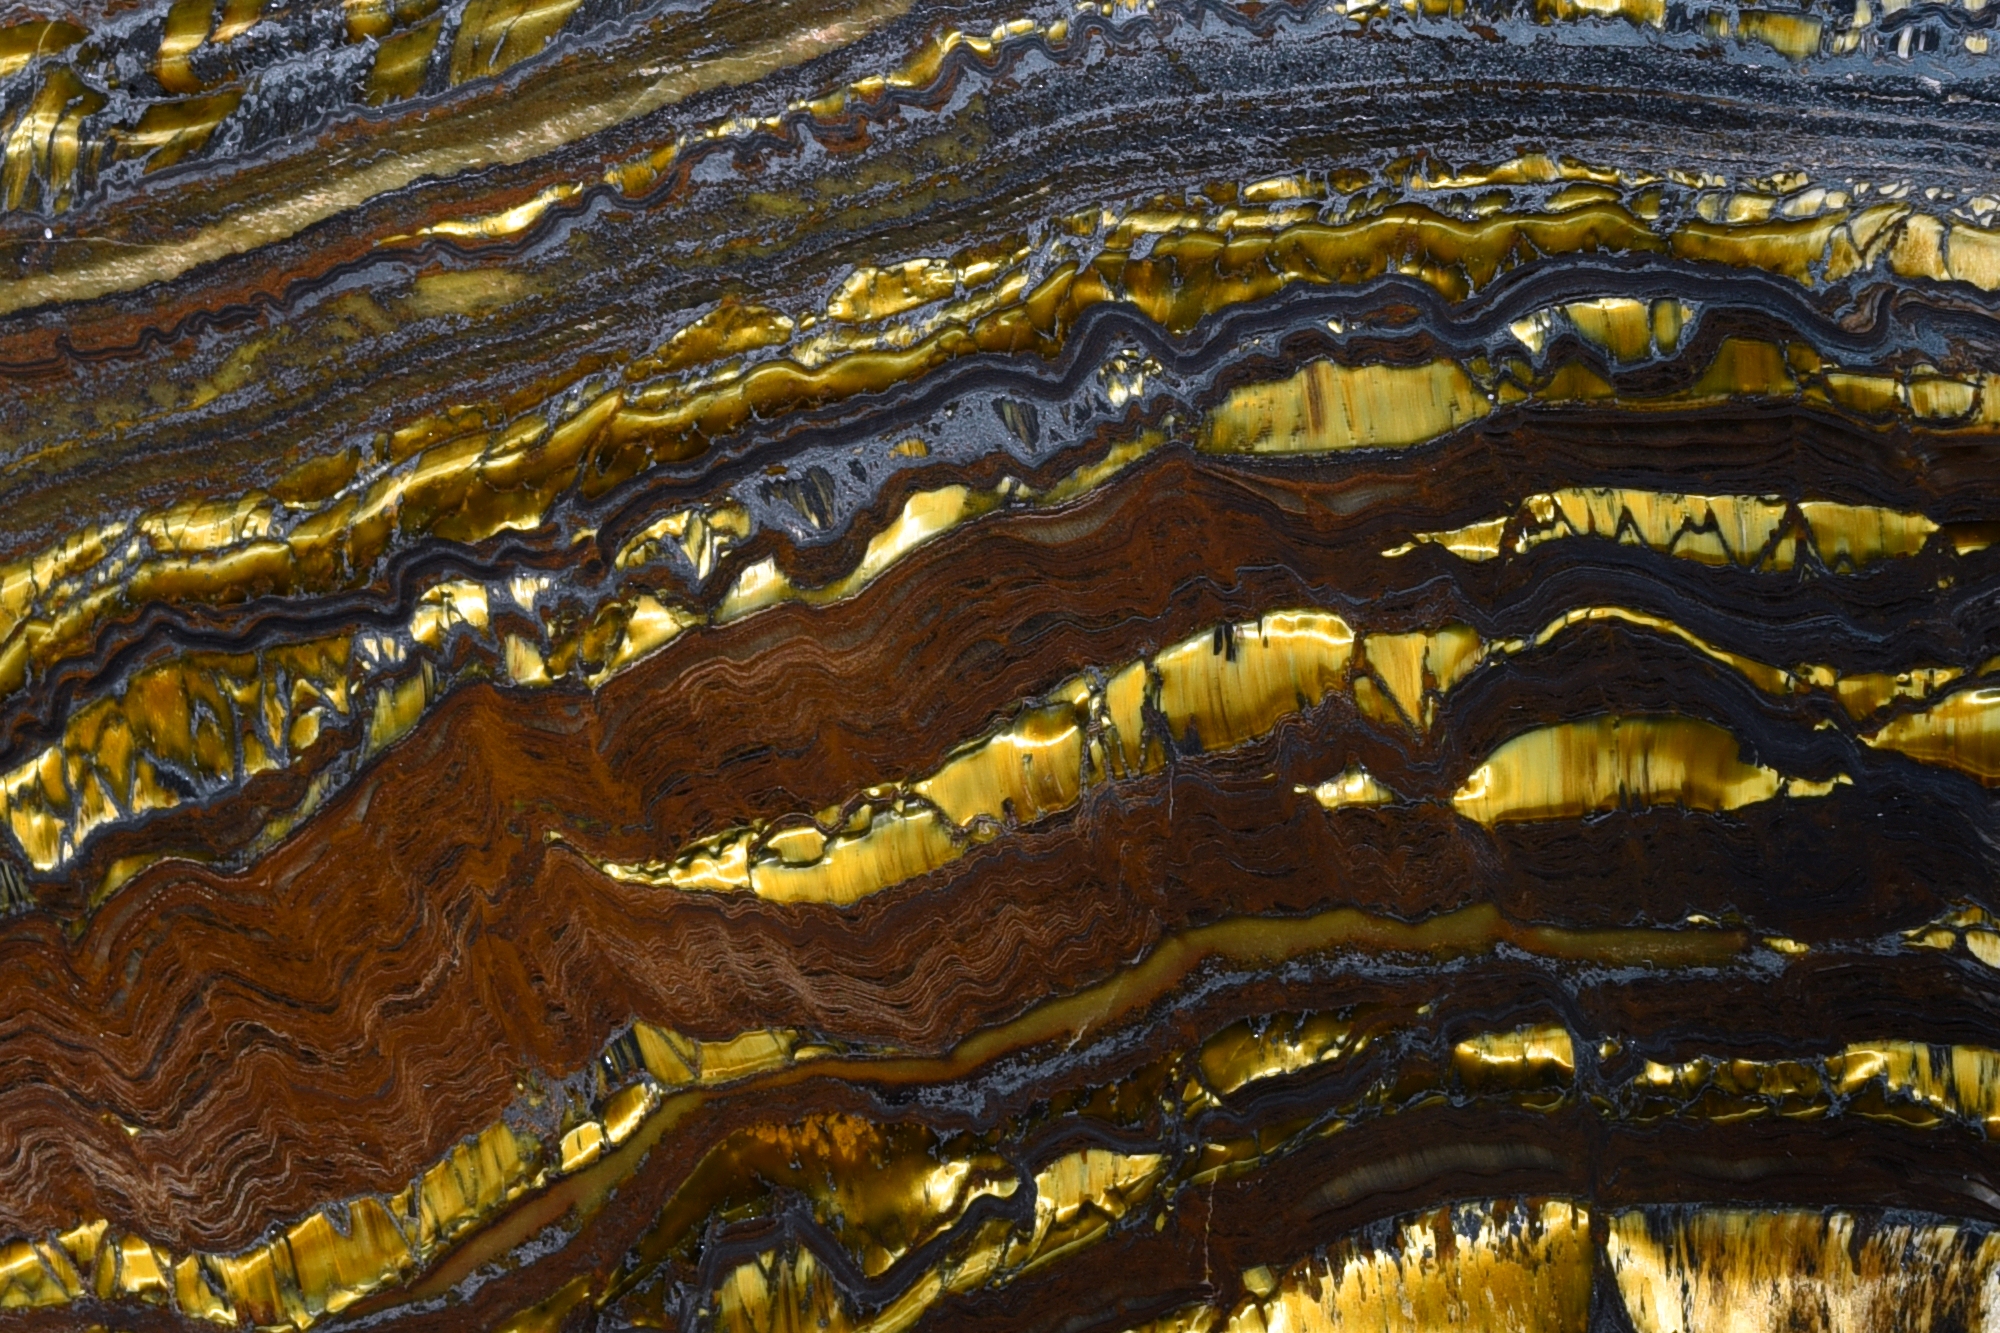 acam-koninklijke-academie-voor-mineralogie-collectie-fossielen-Stromatoliet-hematiet-jaspis-tijgeroog